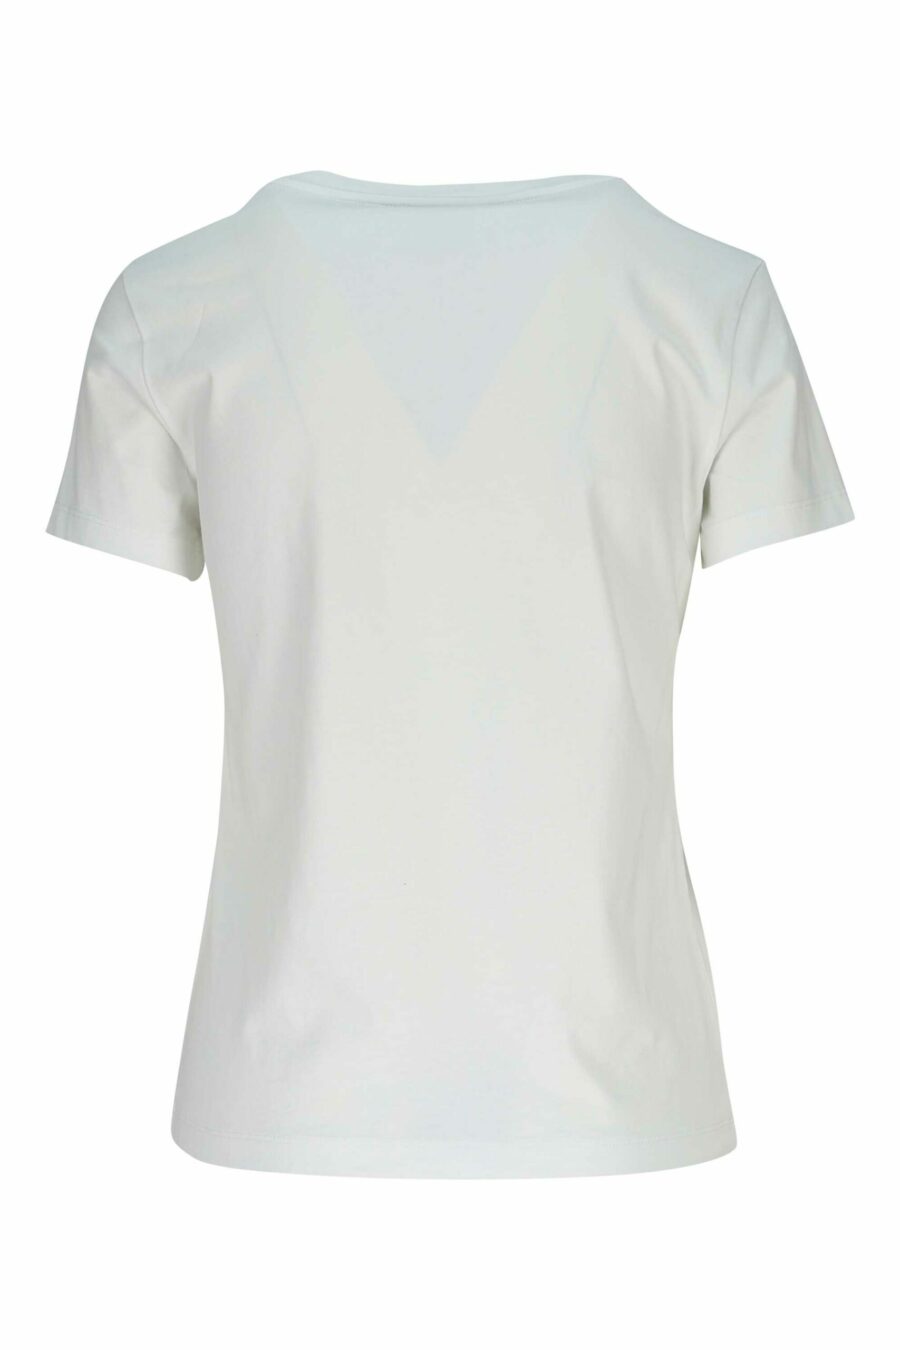 White T-shirt with black "kenzo rose" logo - 3612230637665 1 scaled